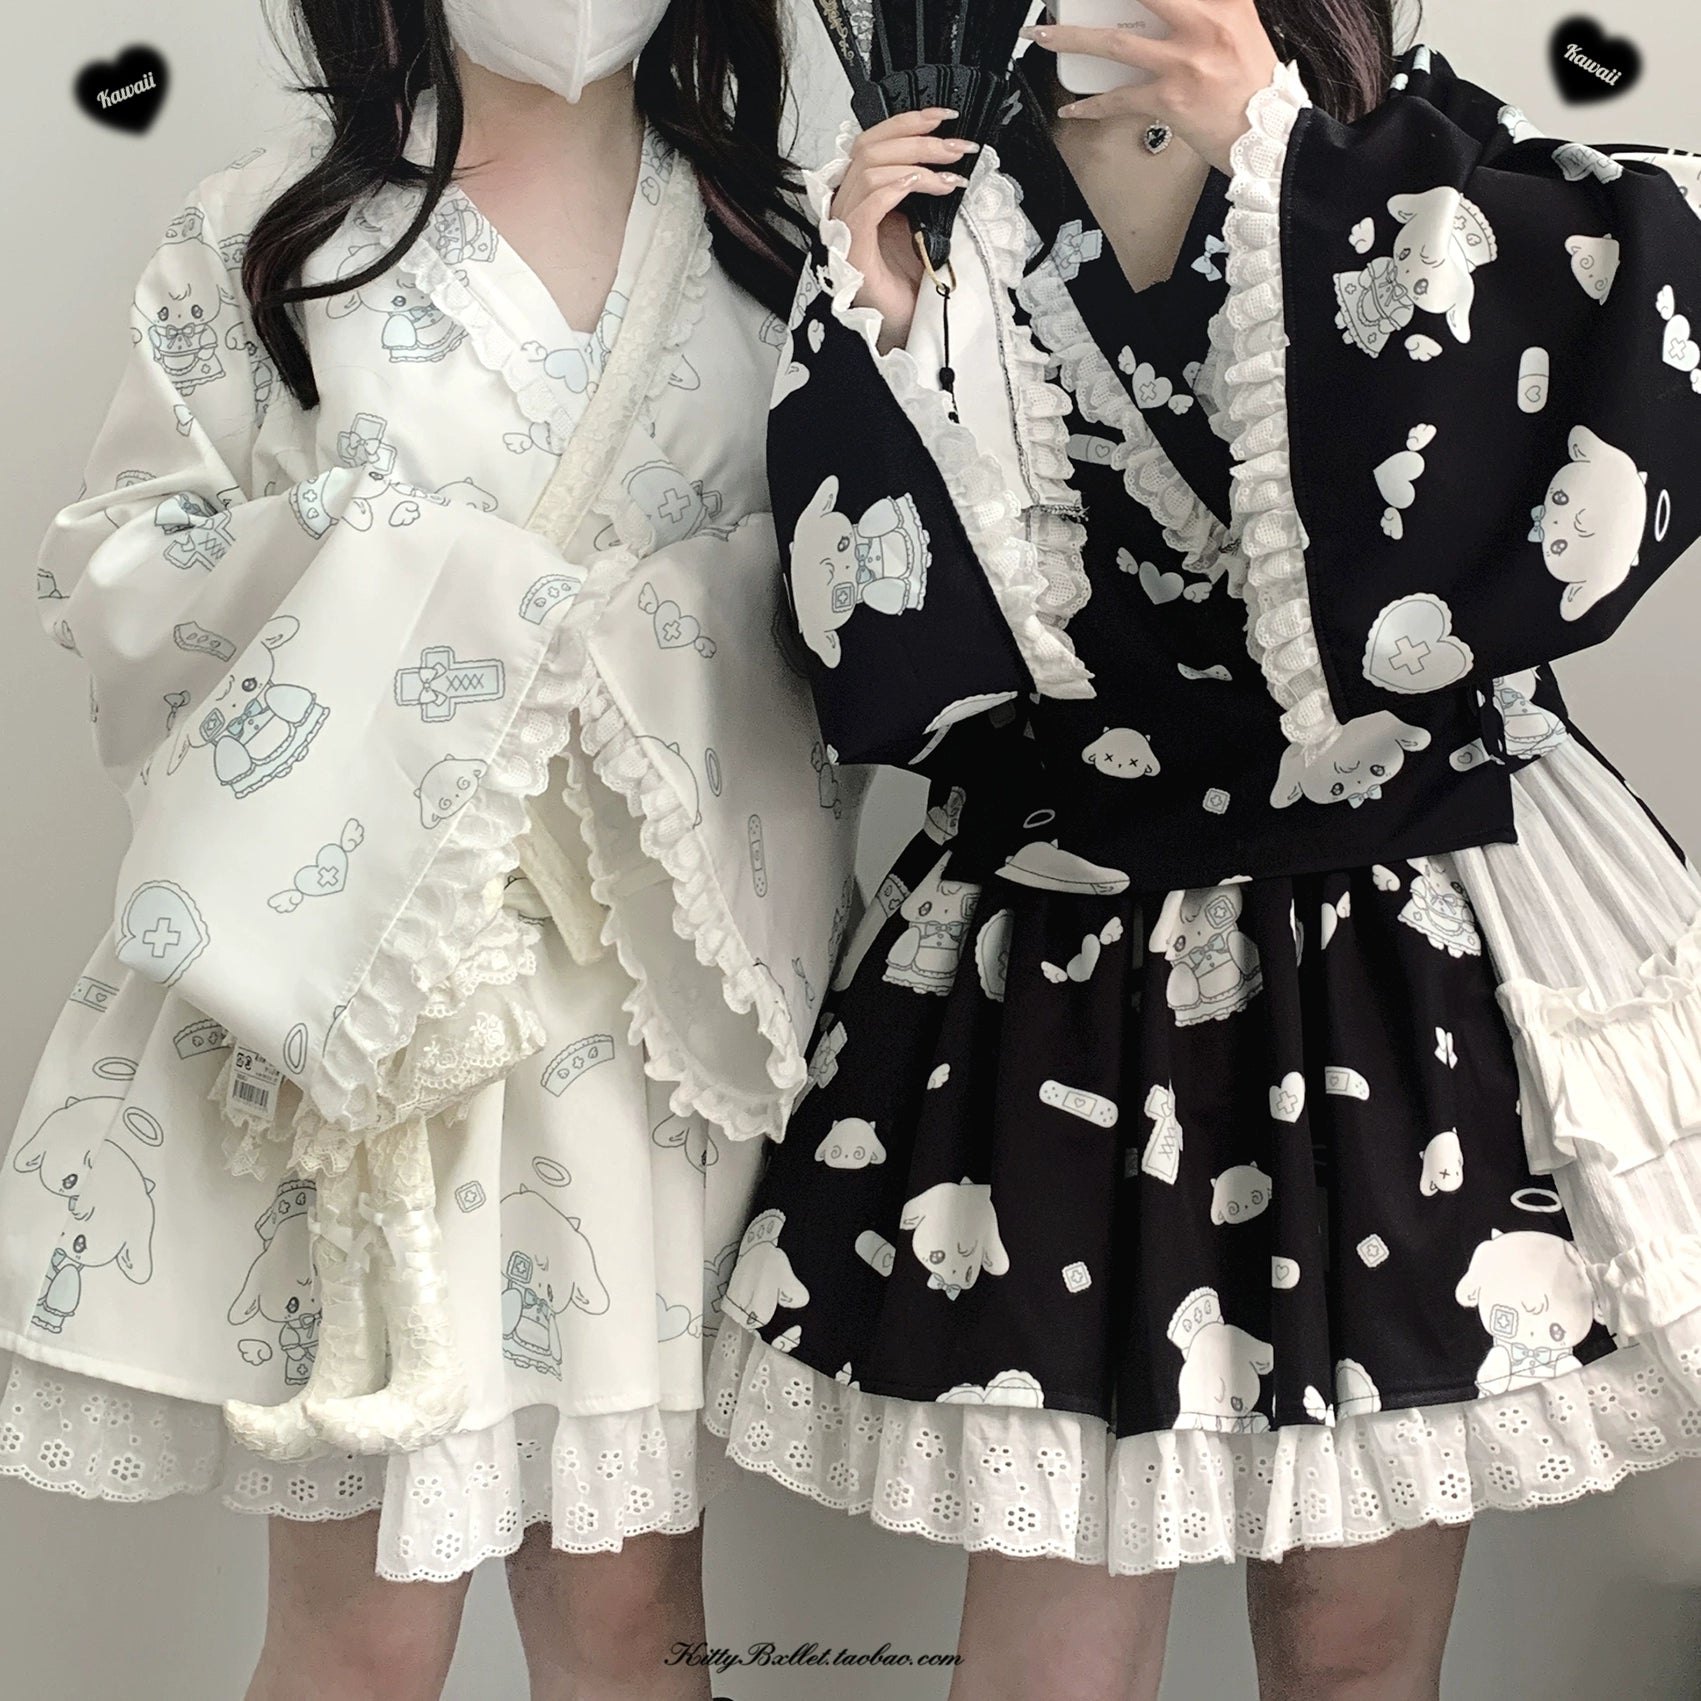 Tenshi Kaiwai Patchwork Skirt Kimono Top White Apron Three-Piece Set 36786:536686